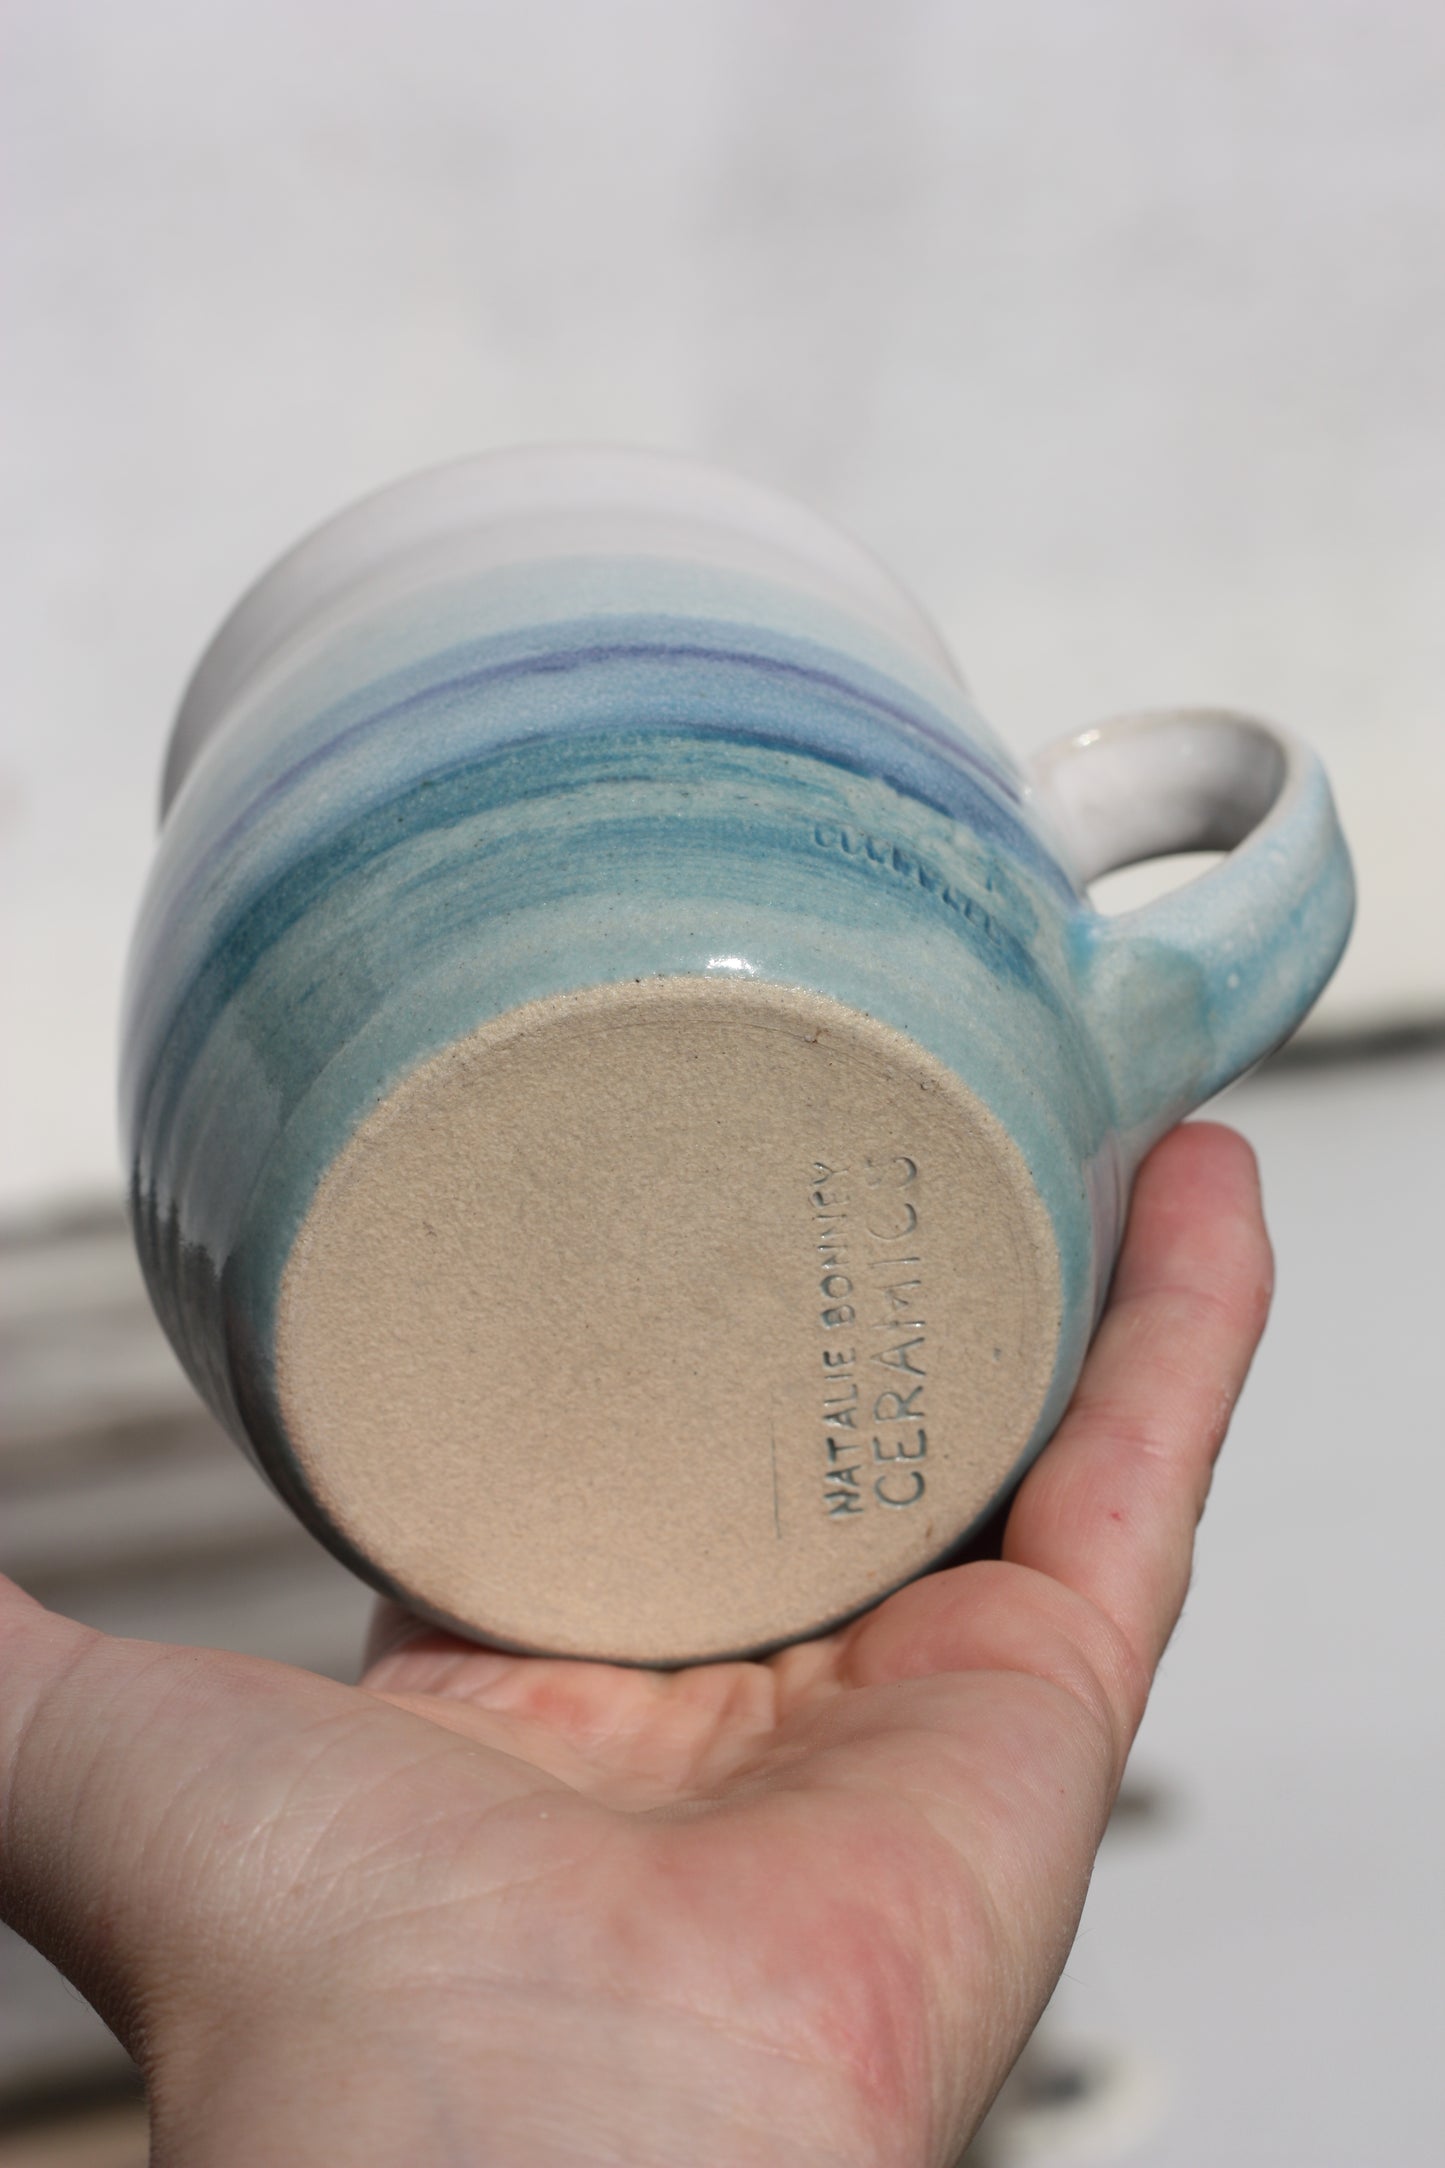 Cornish Seascape glazed Mug 14oz 400ml Large Mug in Blue and White Glaze